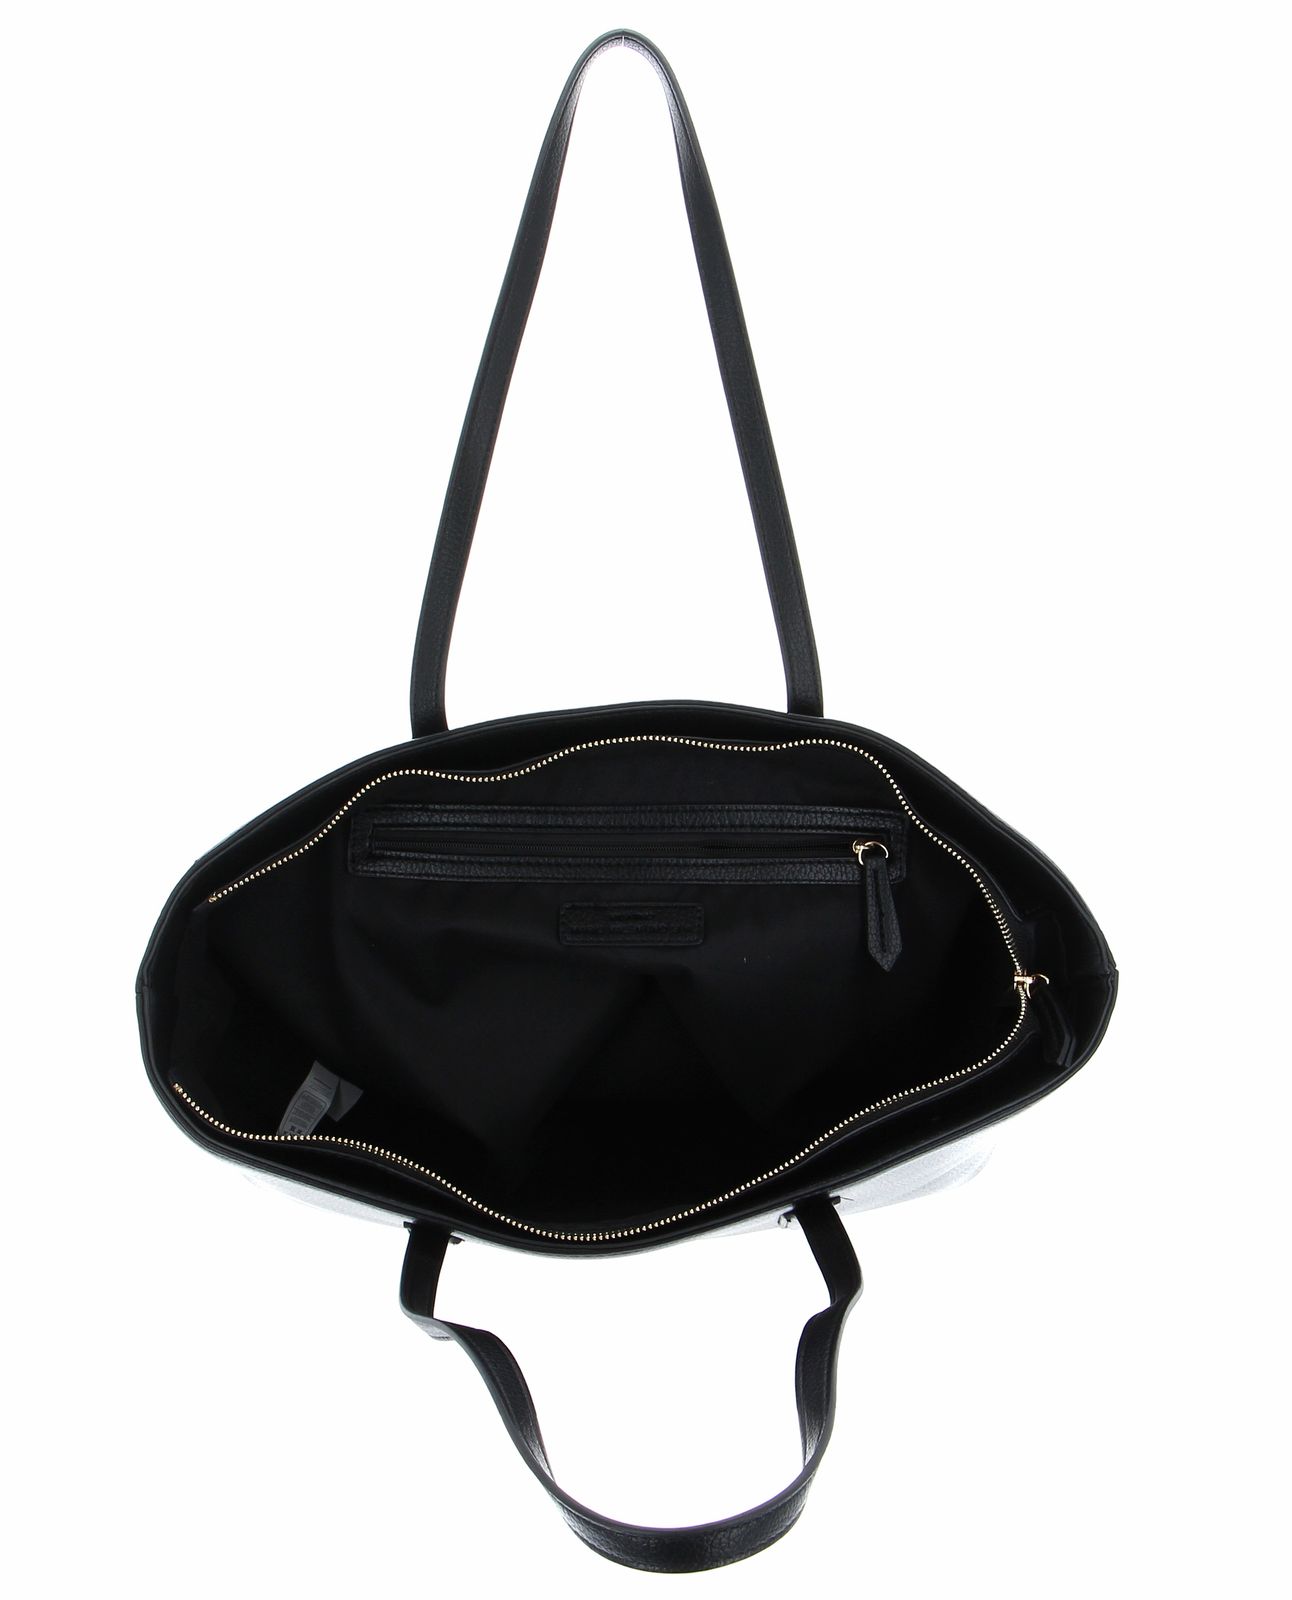 VALENTINO shoulder bag Special Martu Tote Nero | Buy bags, purses ...